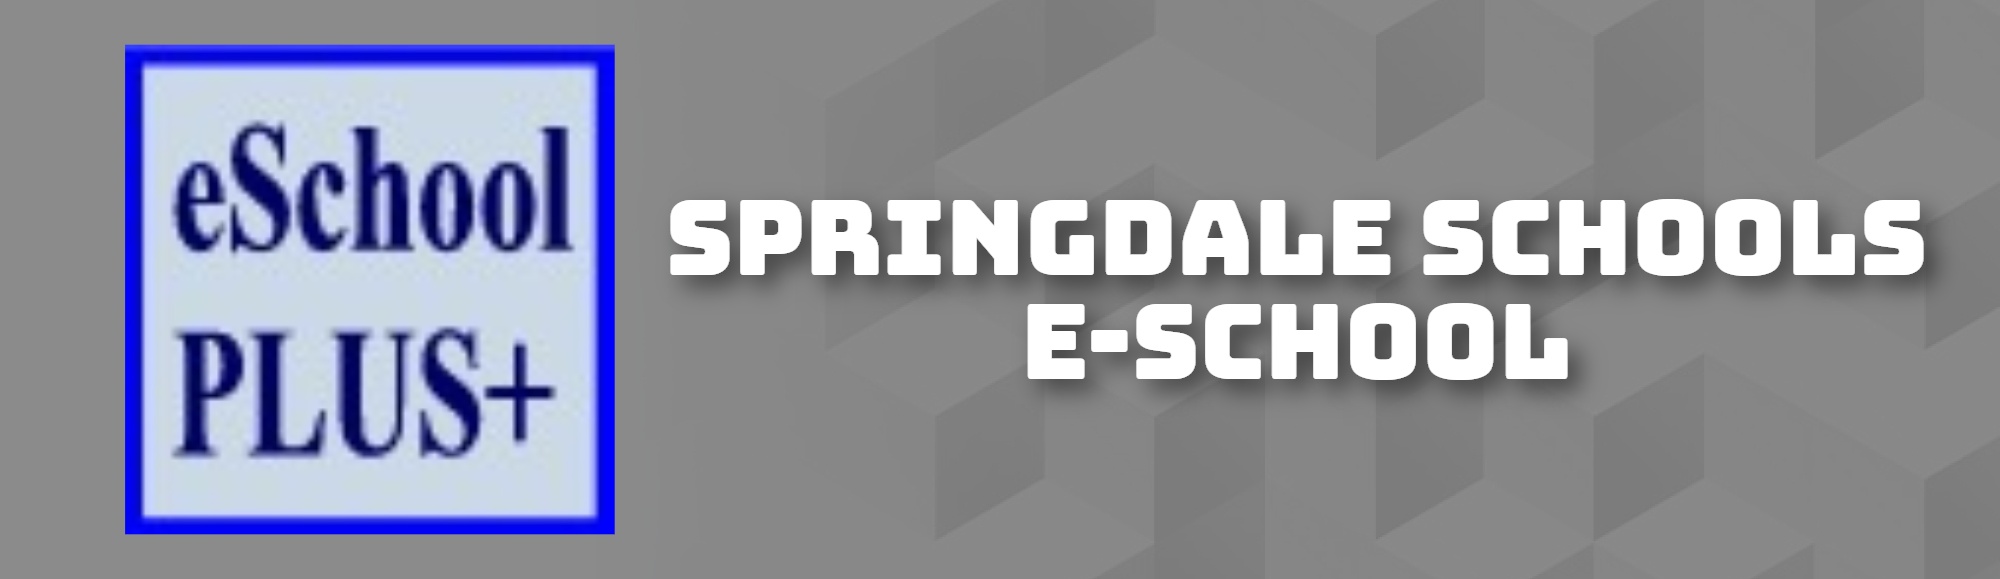 SPRINGDALE SCHOOLS E-SCHOOL